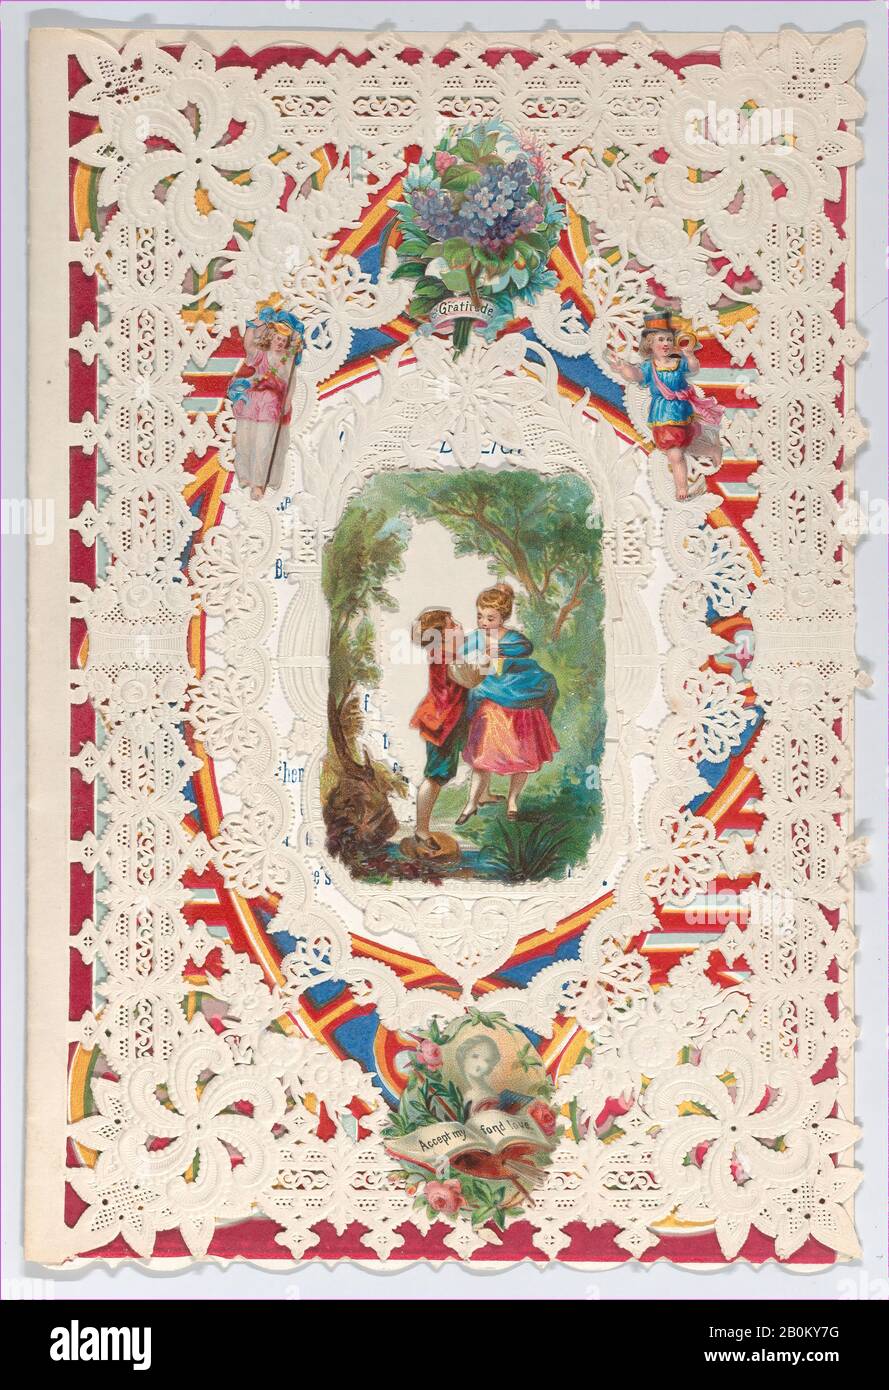 Anonyme, Valentine, Anonymous, 1879, papier à dentelle en relief Cameo, chromolithographie, largeur: 5 7/8 po. (15 cm), longueur : 7 1/4 po. (18,4 cm Banque D'Images